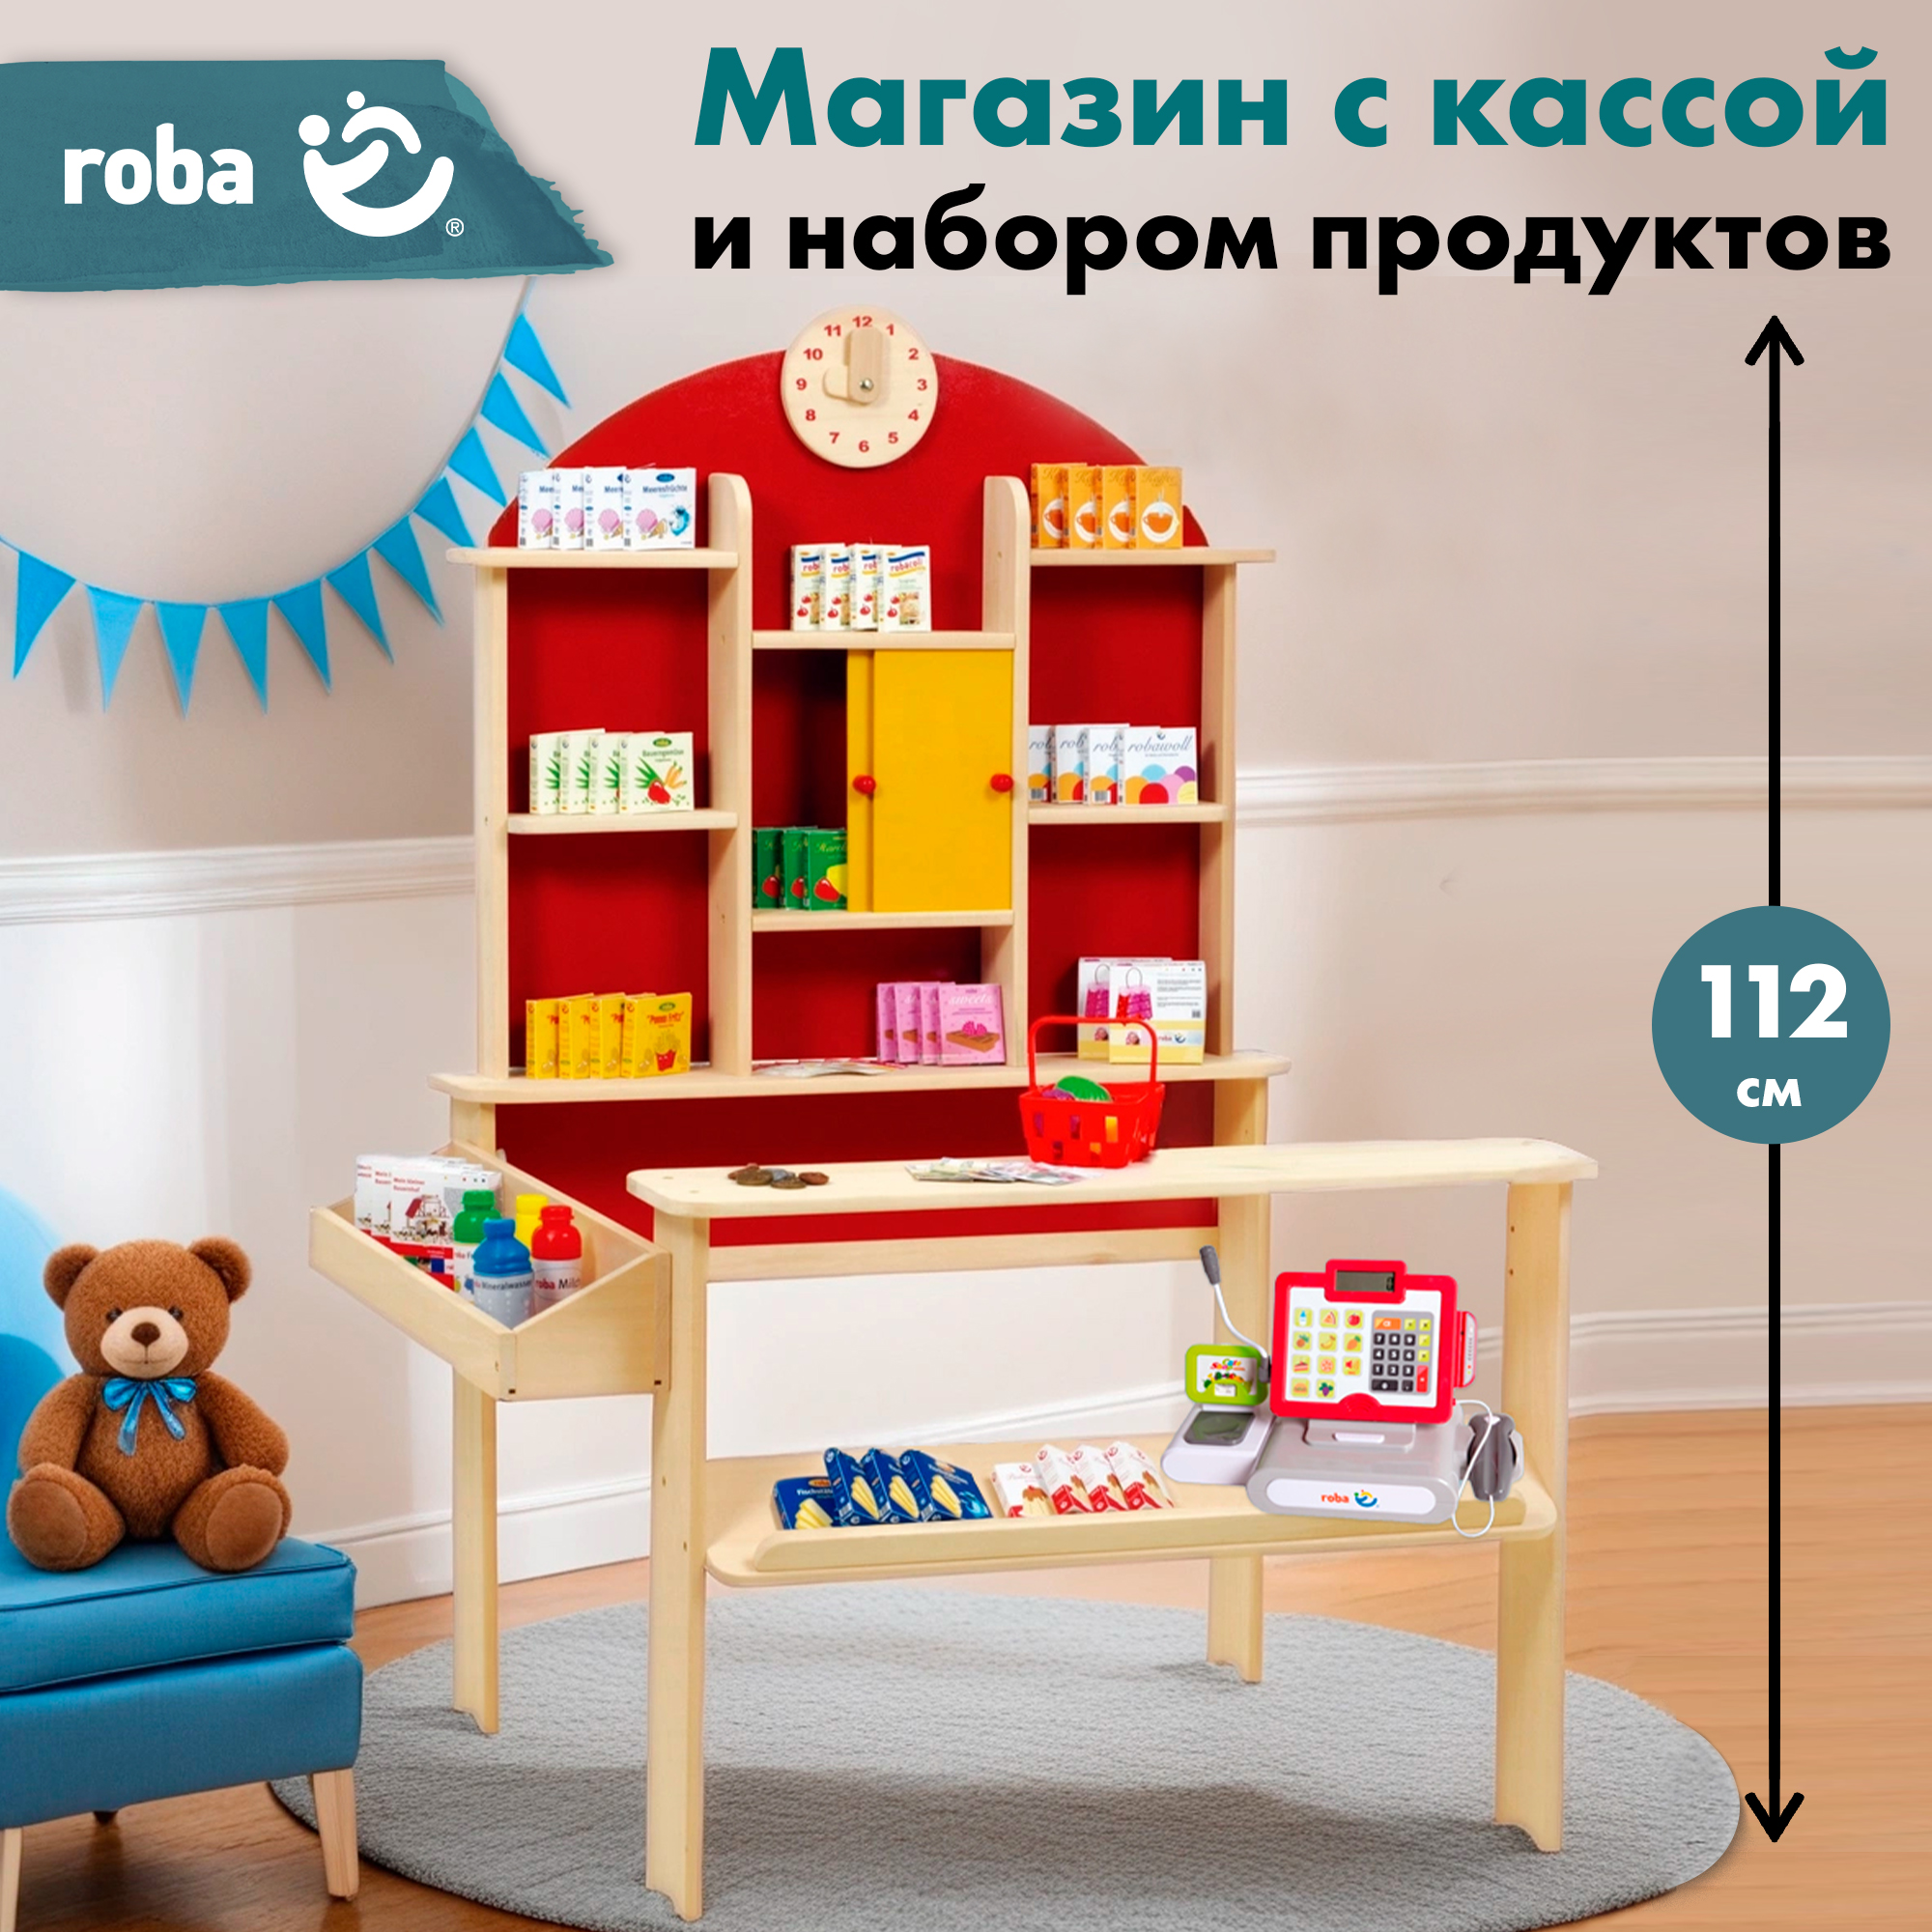 Детский магазин Roba игровой набор: супермаркет с игрушечными продуктами и кассой veld co набор касса со сканером